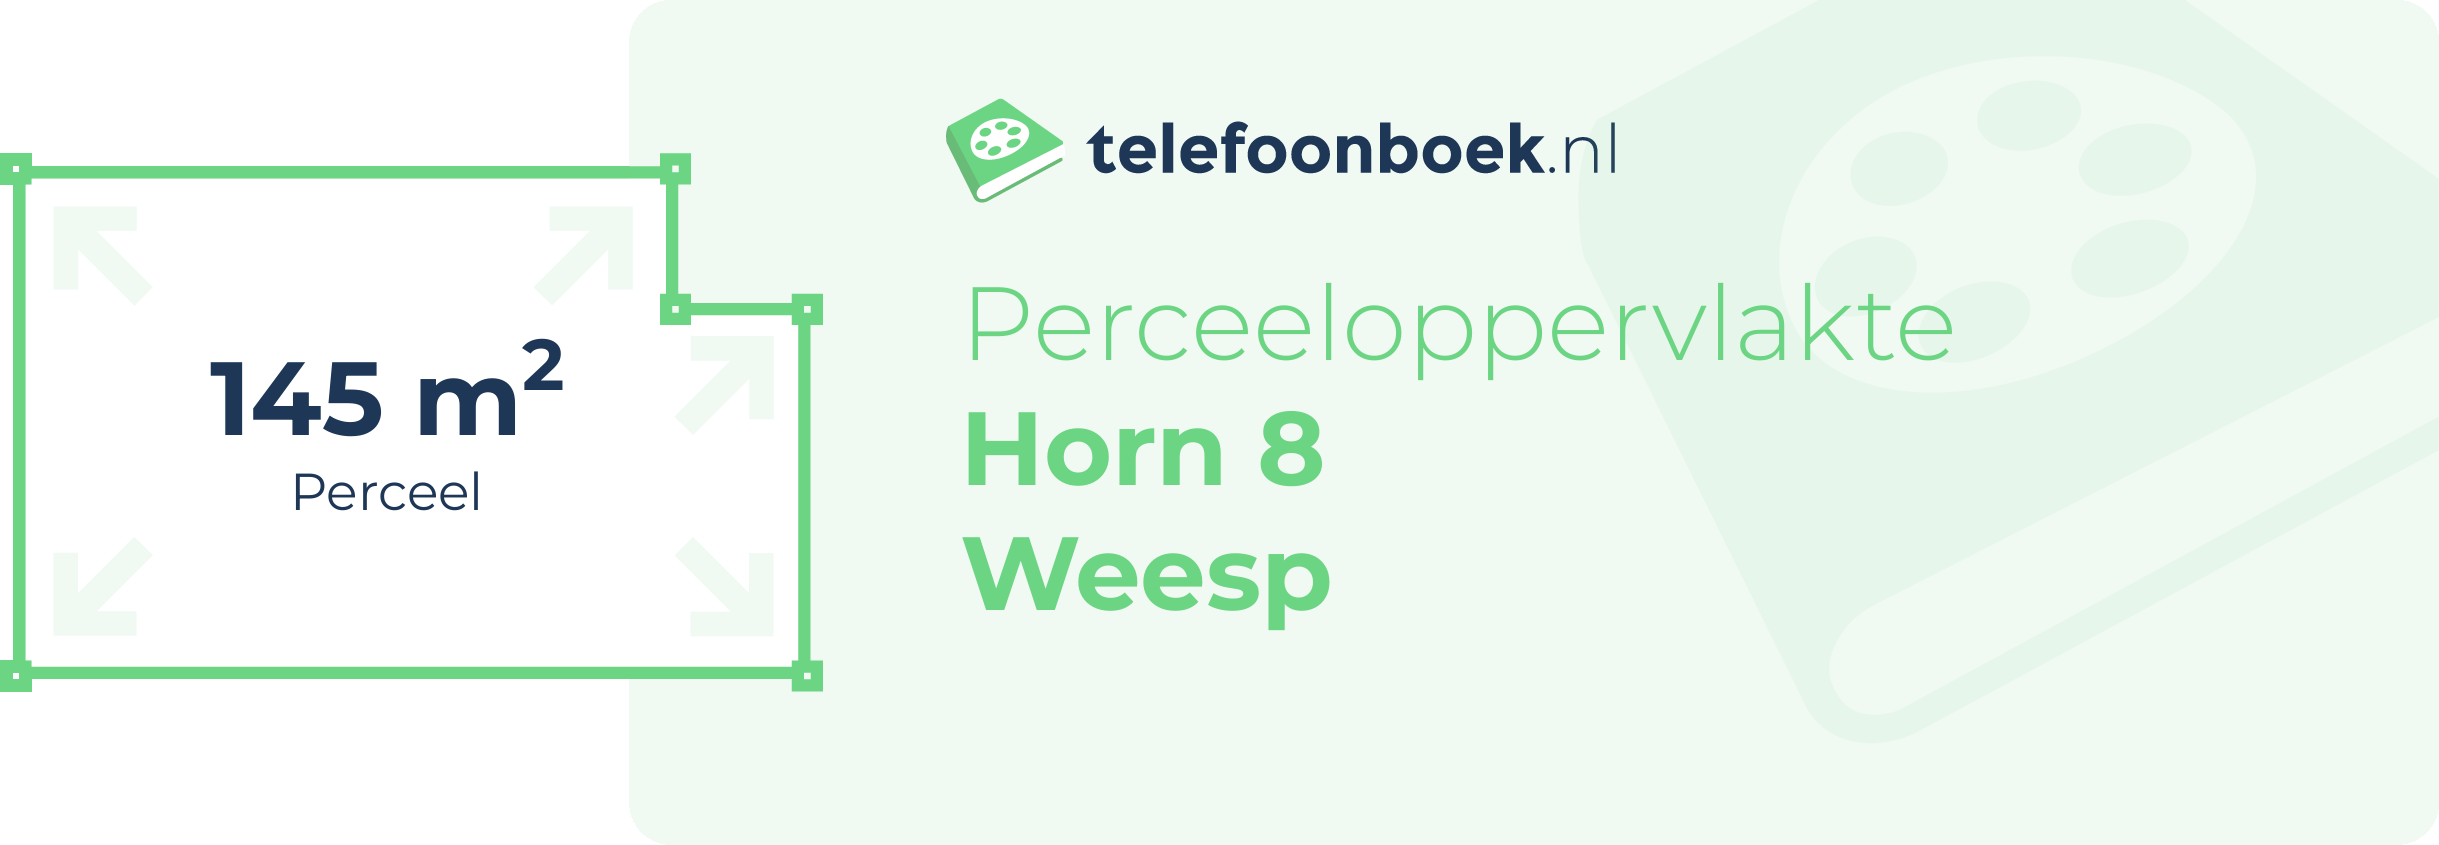 Perceeloppervlakte Horn 8 Weesp